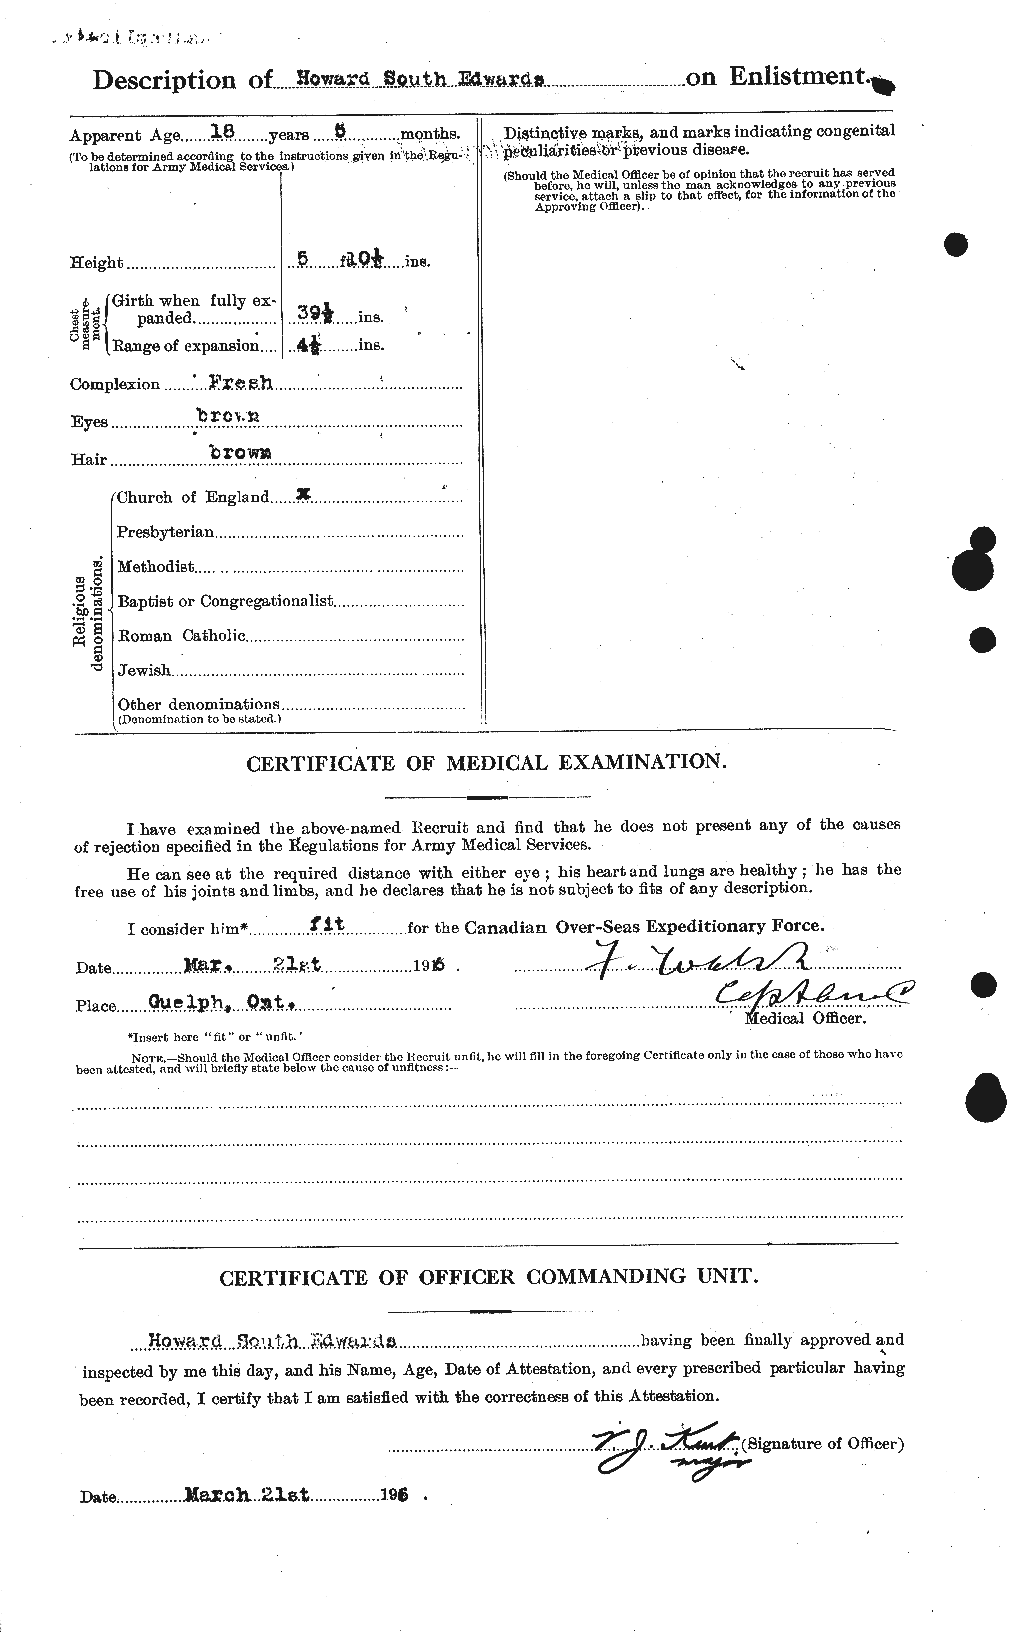 Dossiers du Personnel de la Première Guerre mondiale - CEC 309791b